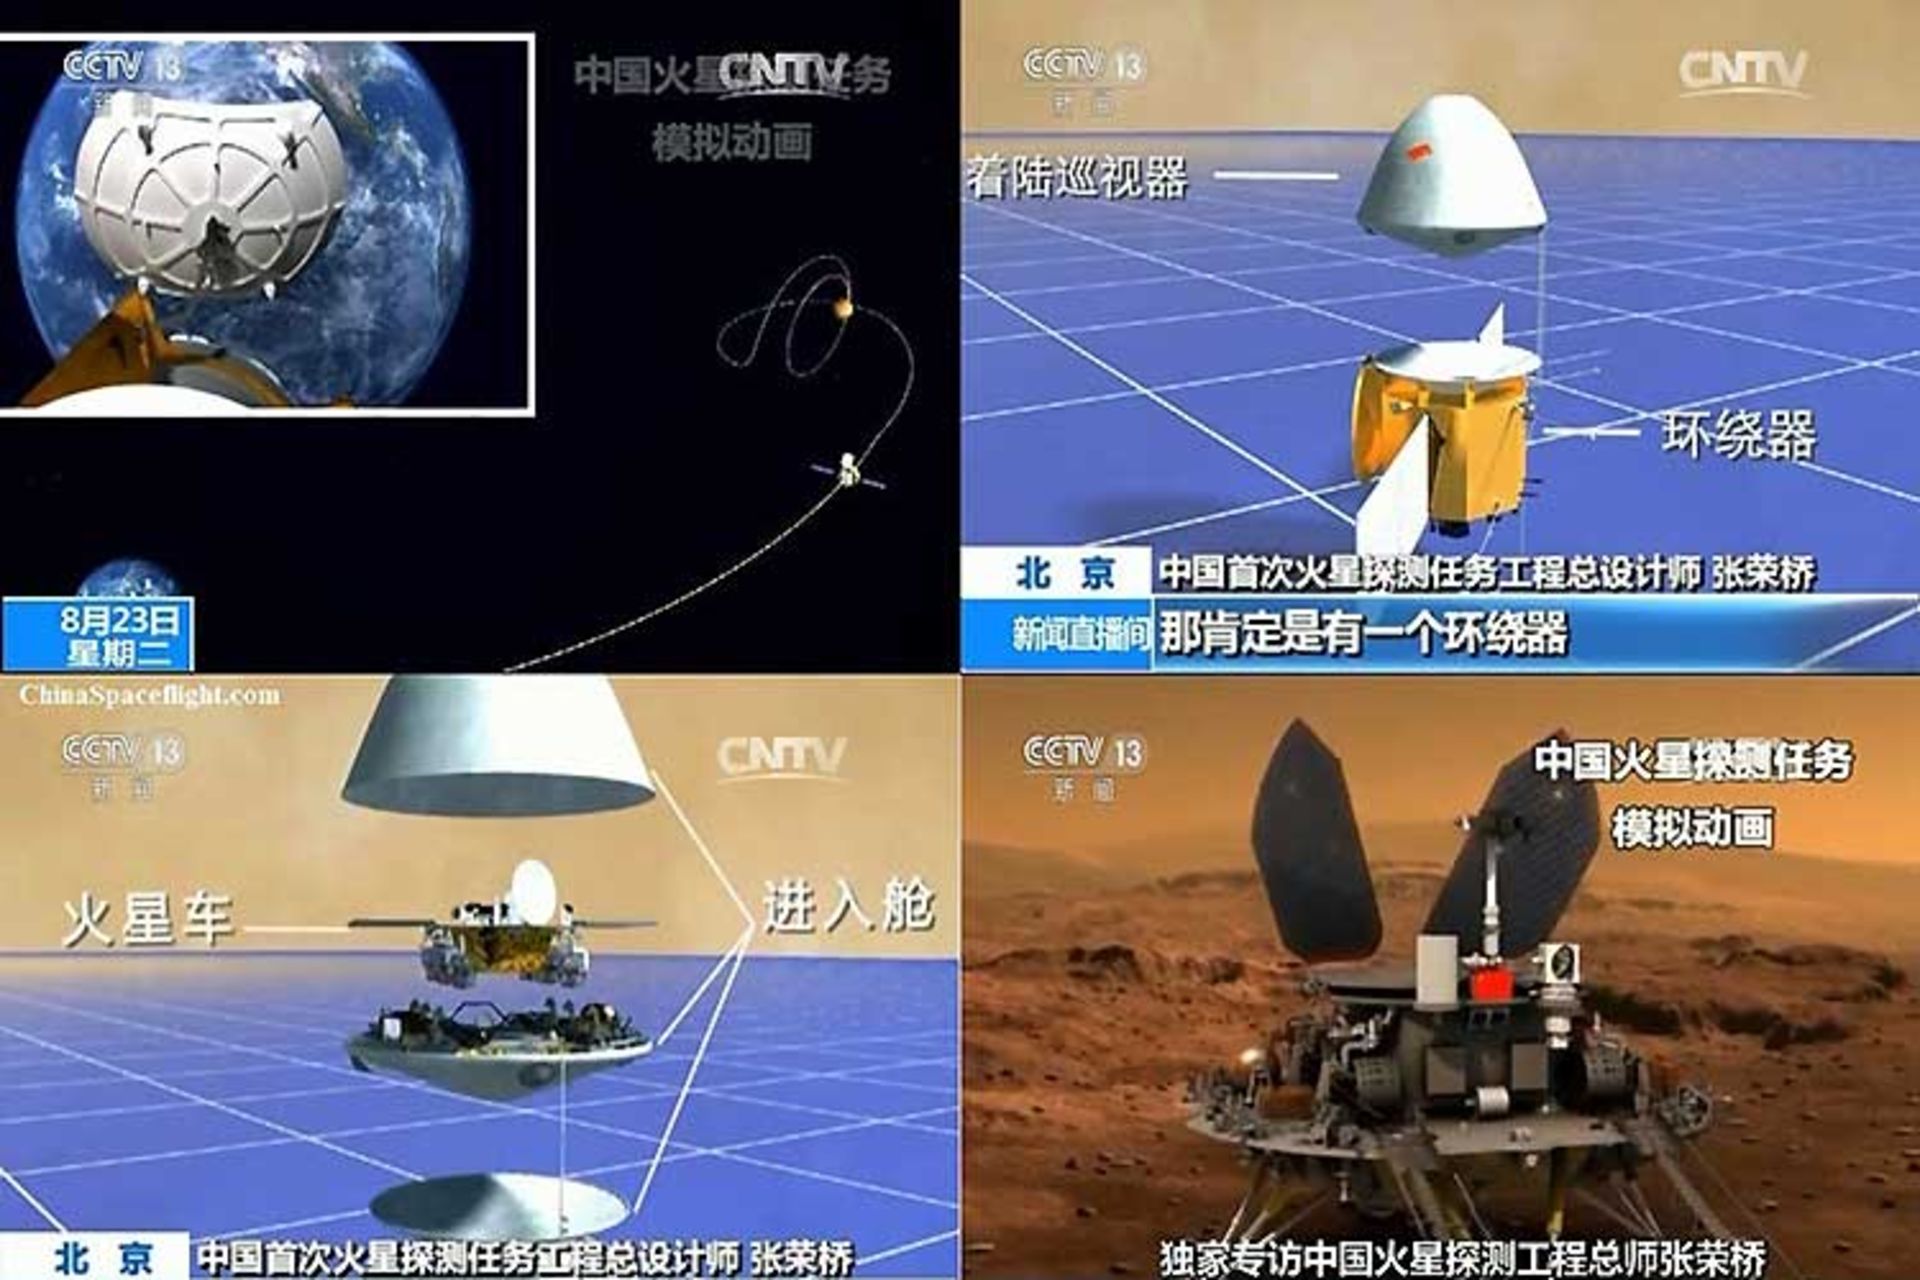 مرجع متخصصين ايران مريخ نورد چين / Chinese Mars Rover